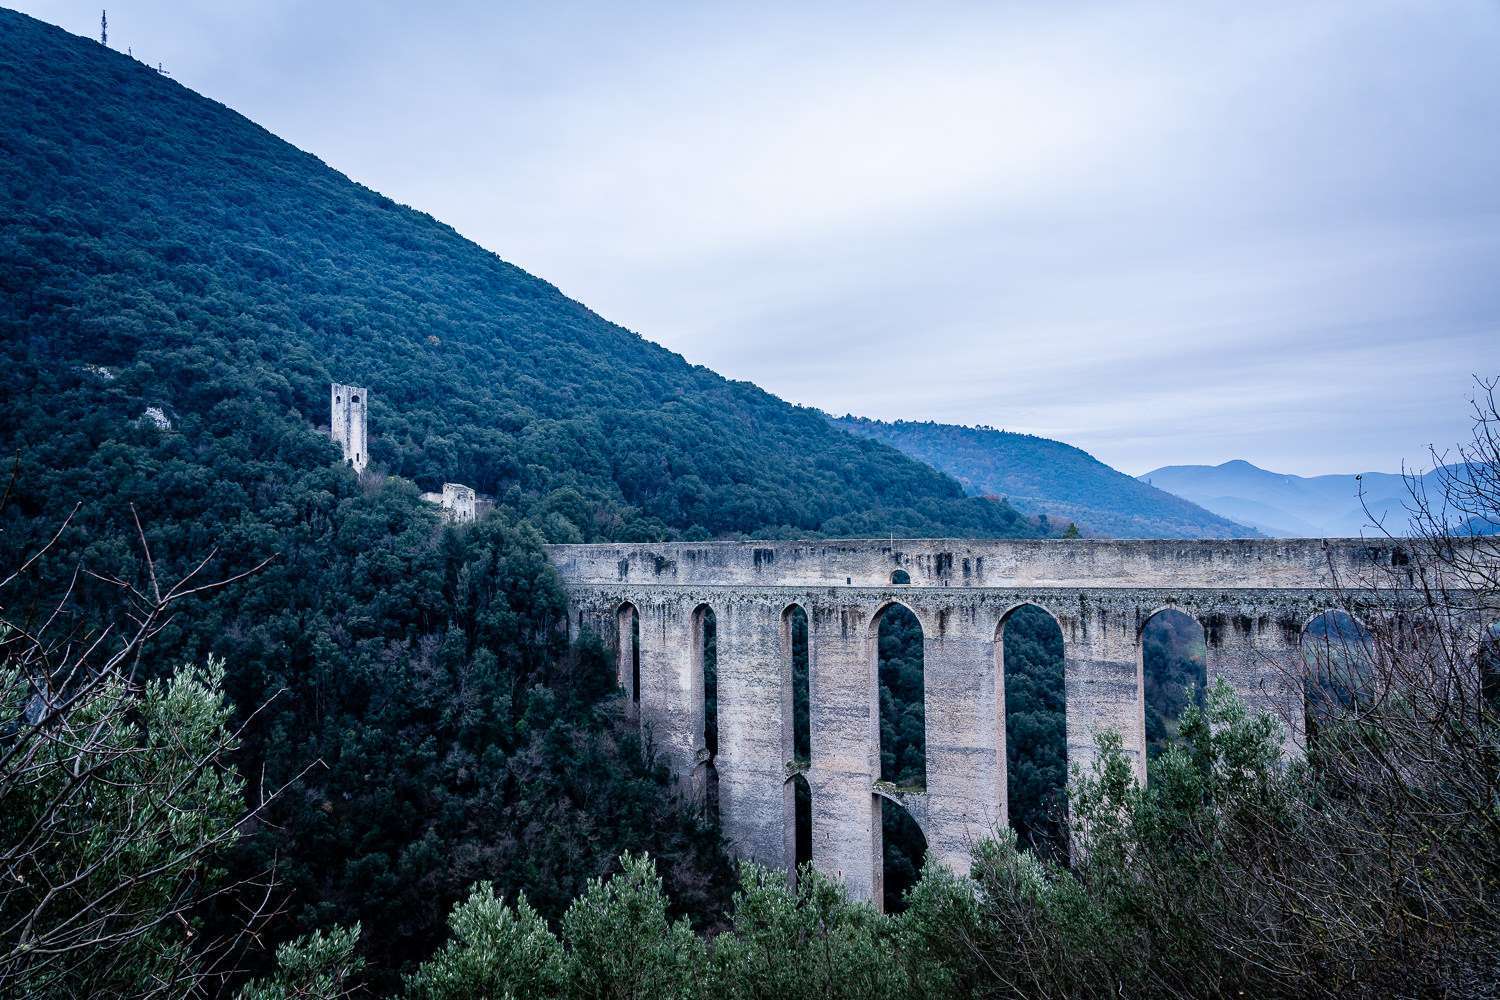 Ponte delle Torri in Spoleto Italy